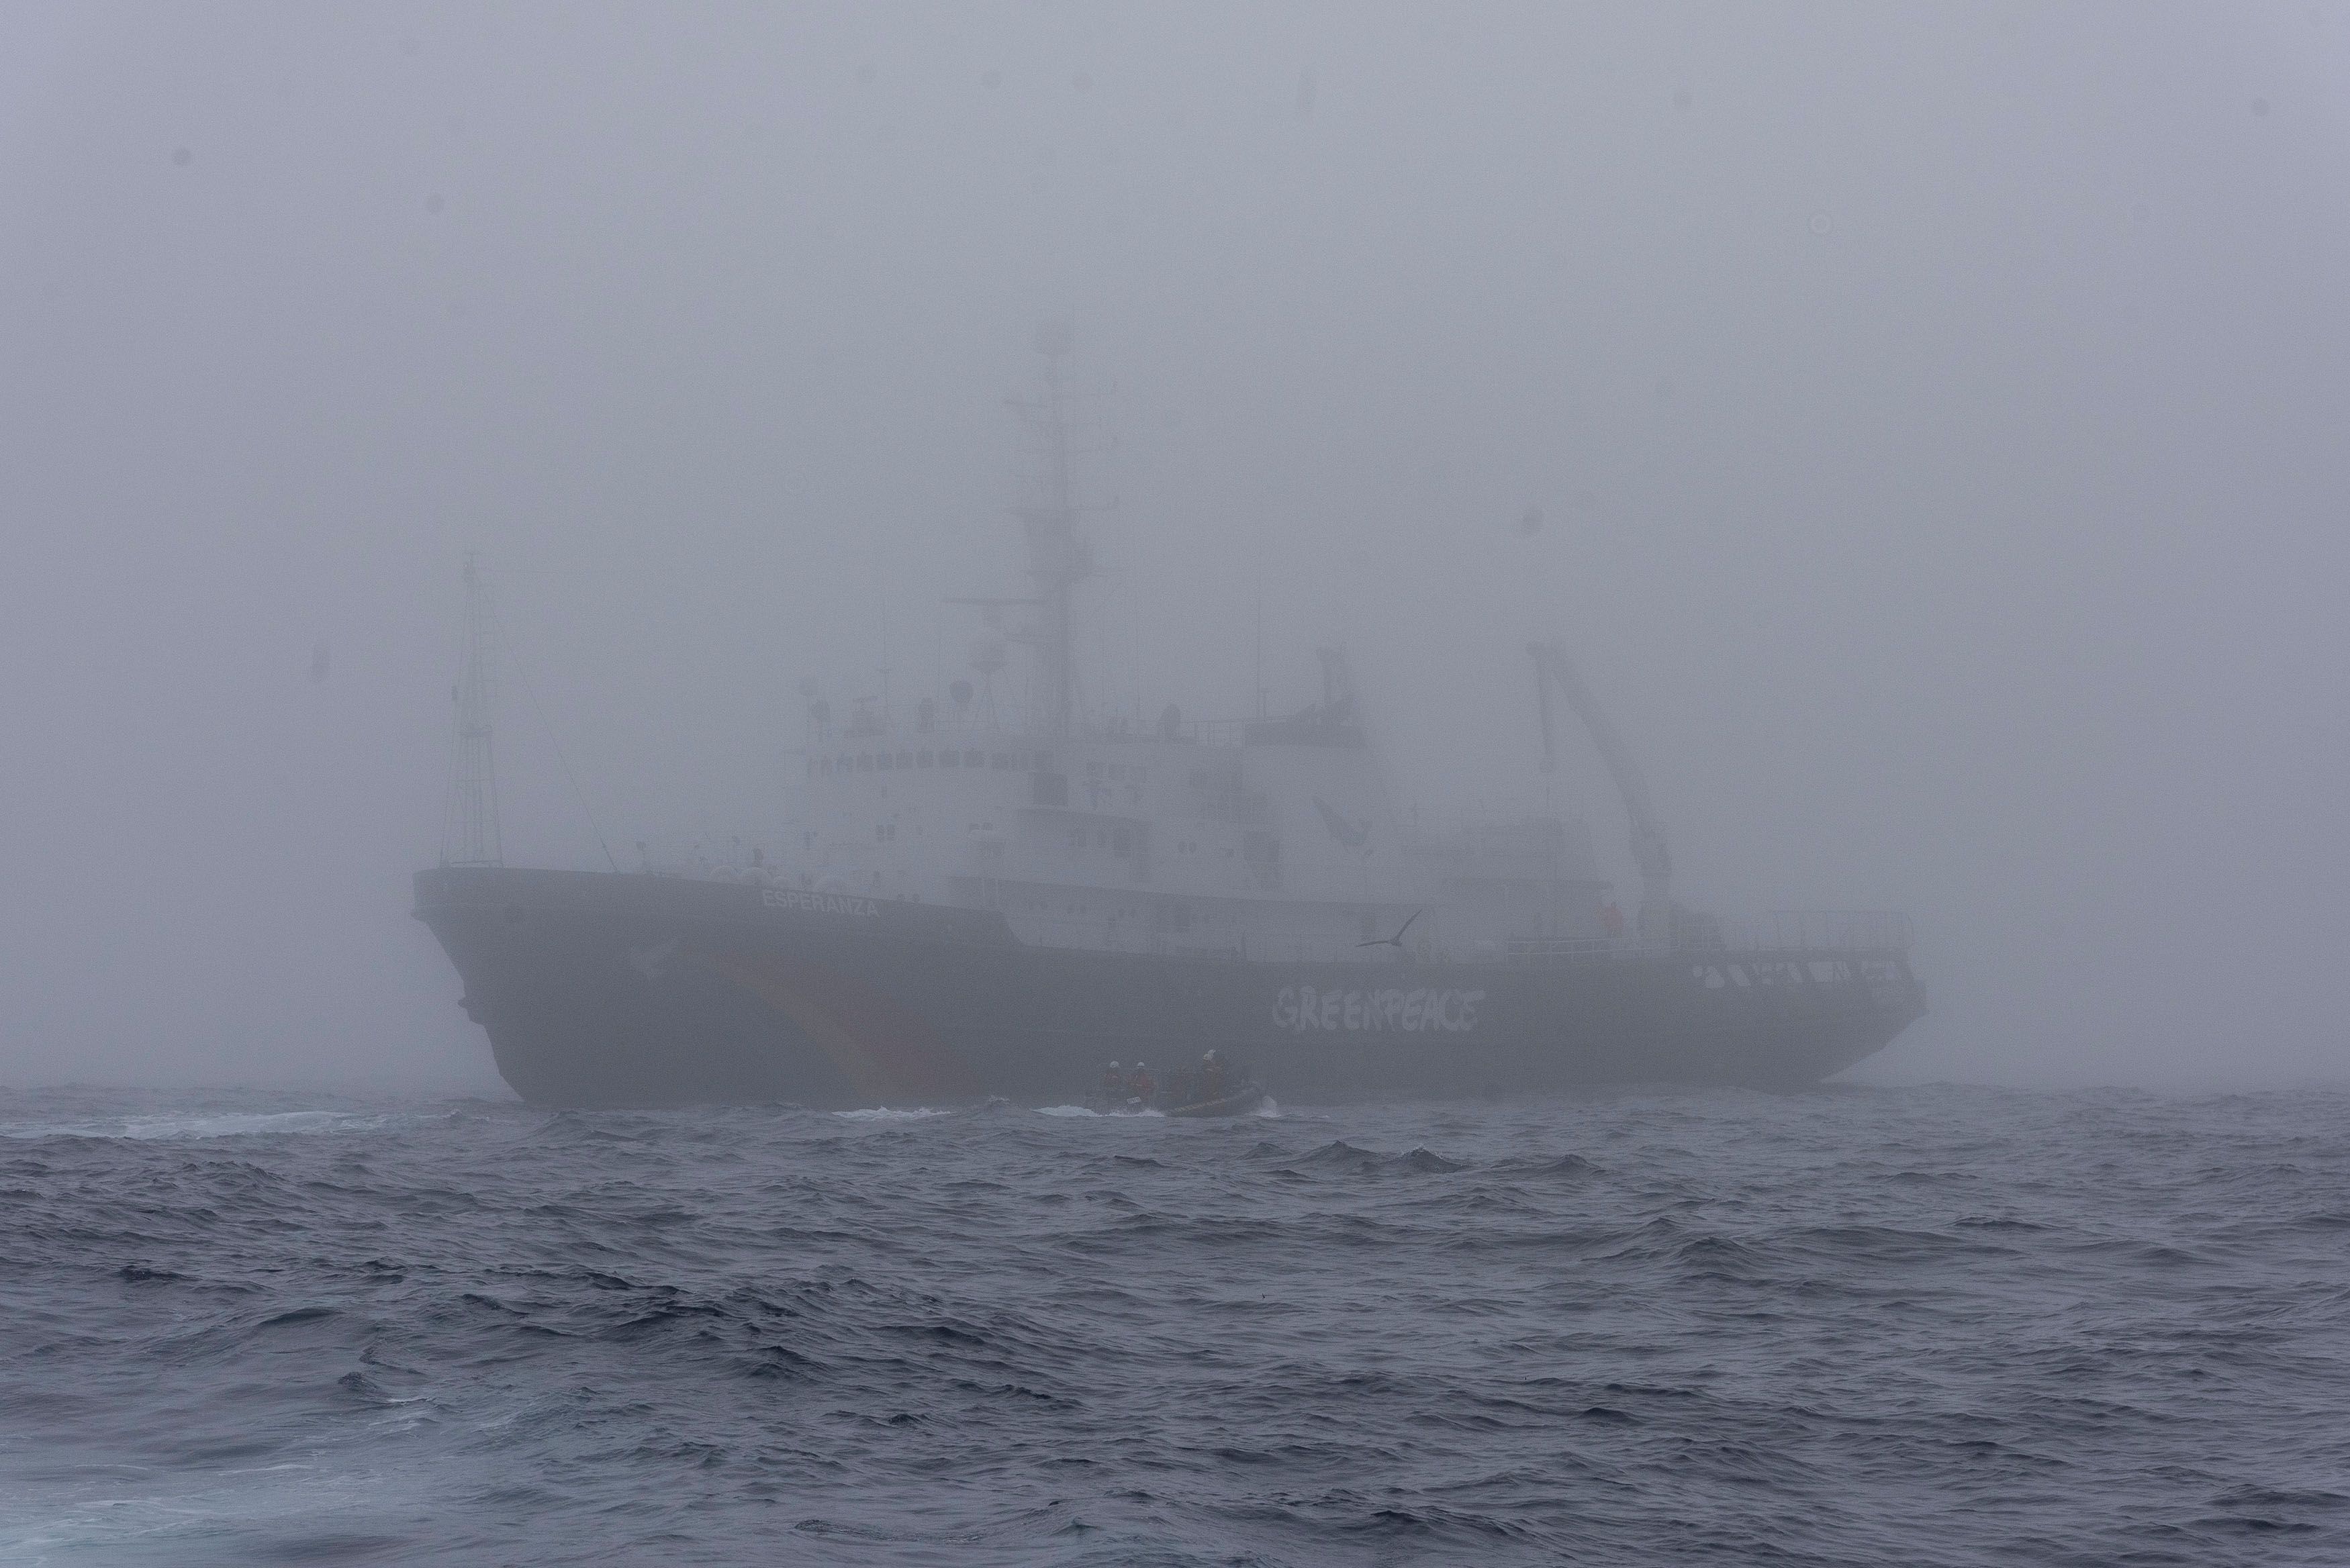 El Esperanza en medio de la espesa niebla que cubrió el océano a la hora de la acción contra el pesquero surcoreano. Foto: Cristobal Olivares / Greenpeace